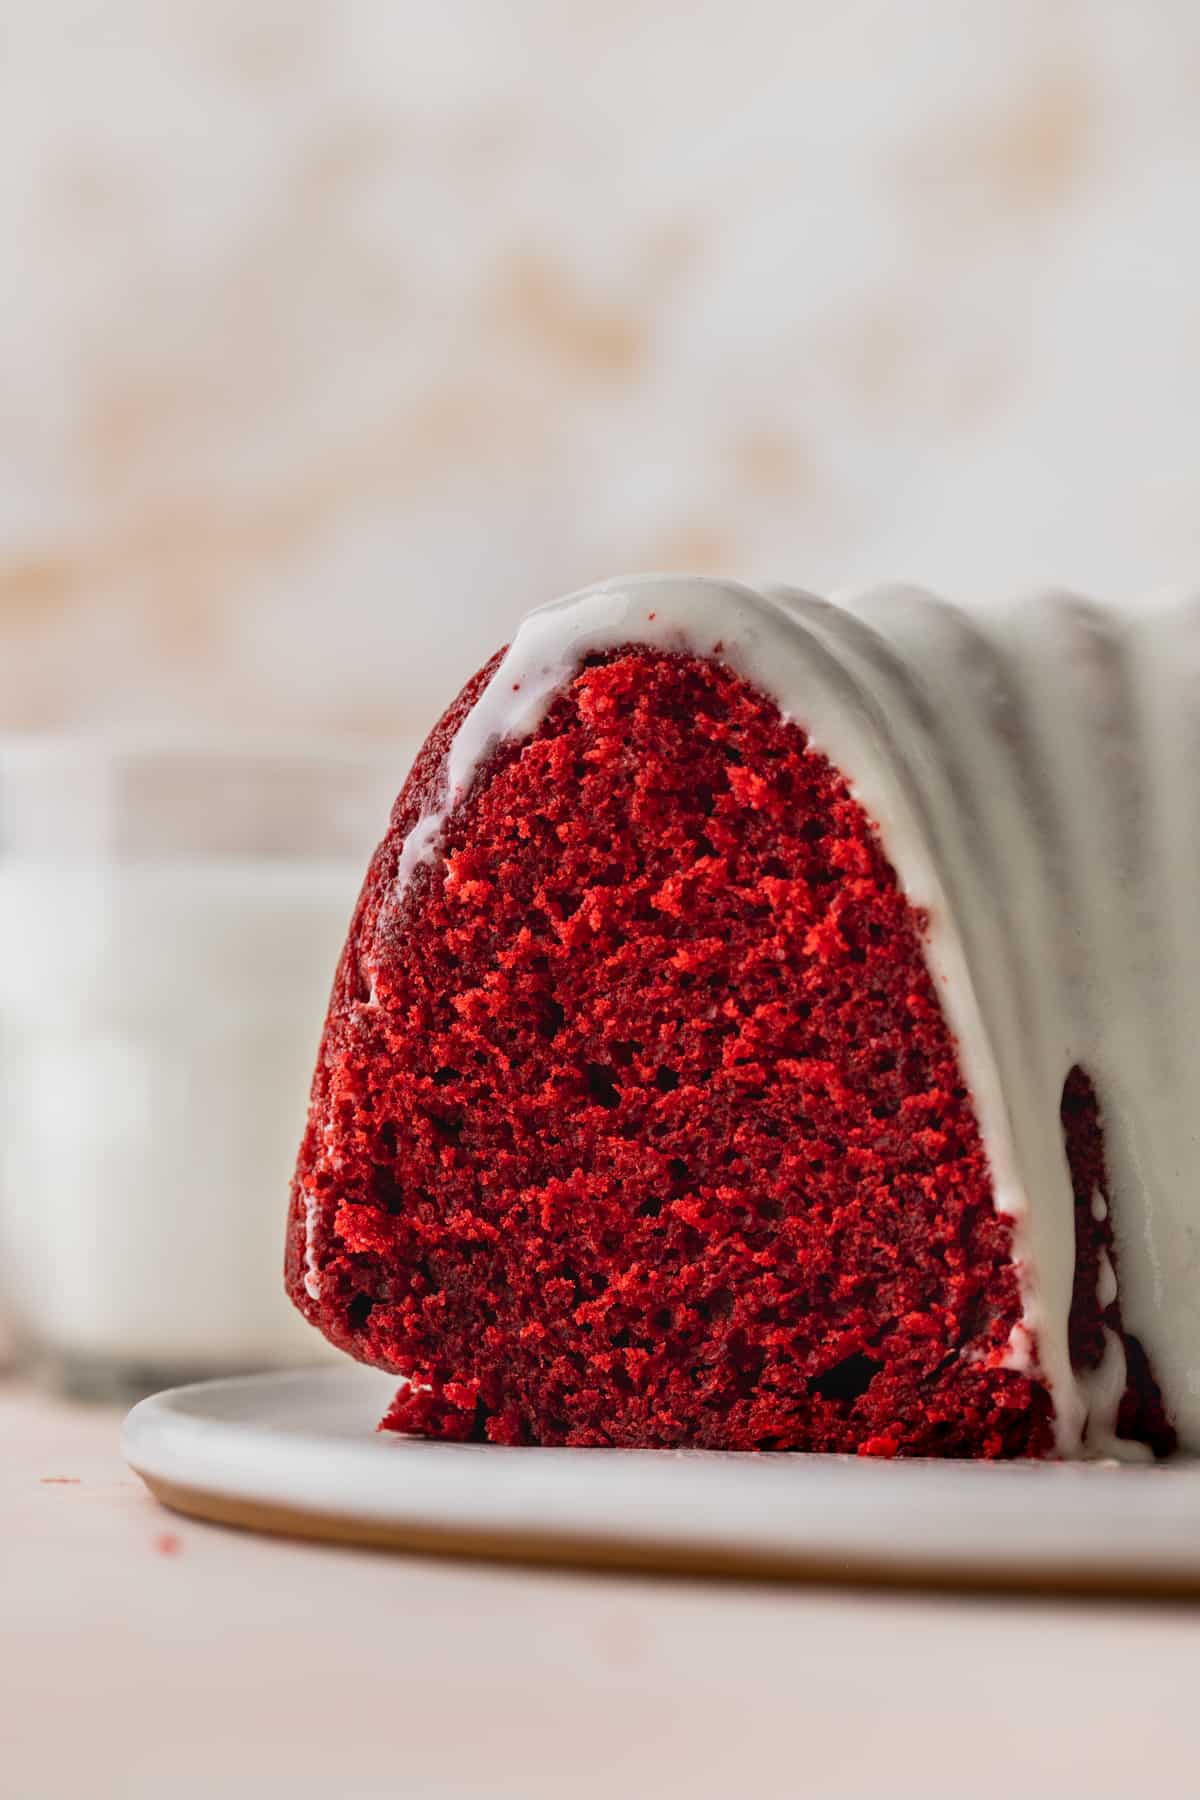 Red velvet bundt cake showing the inside.